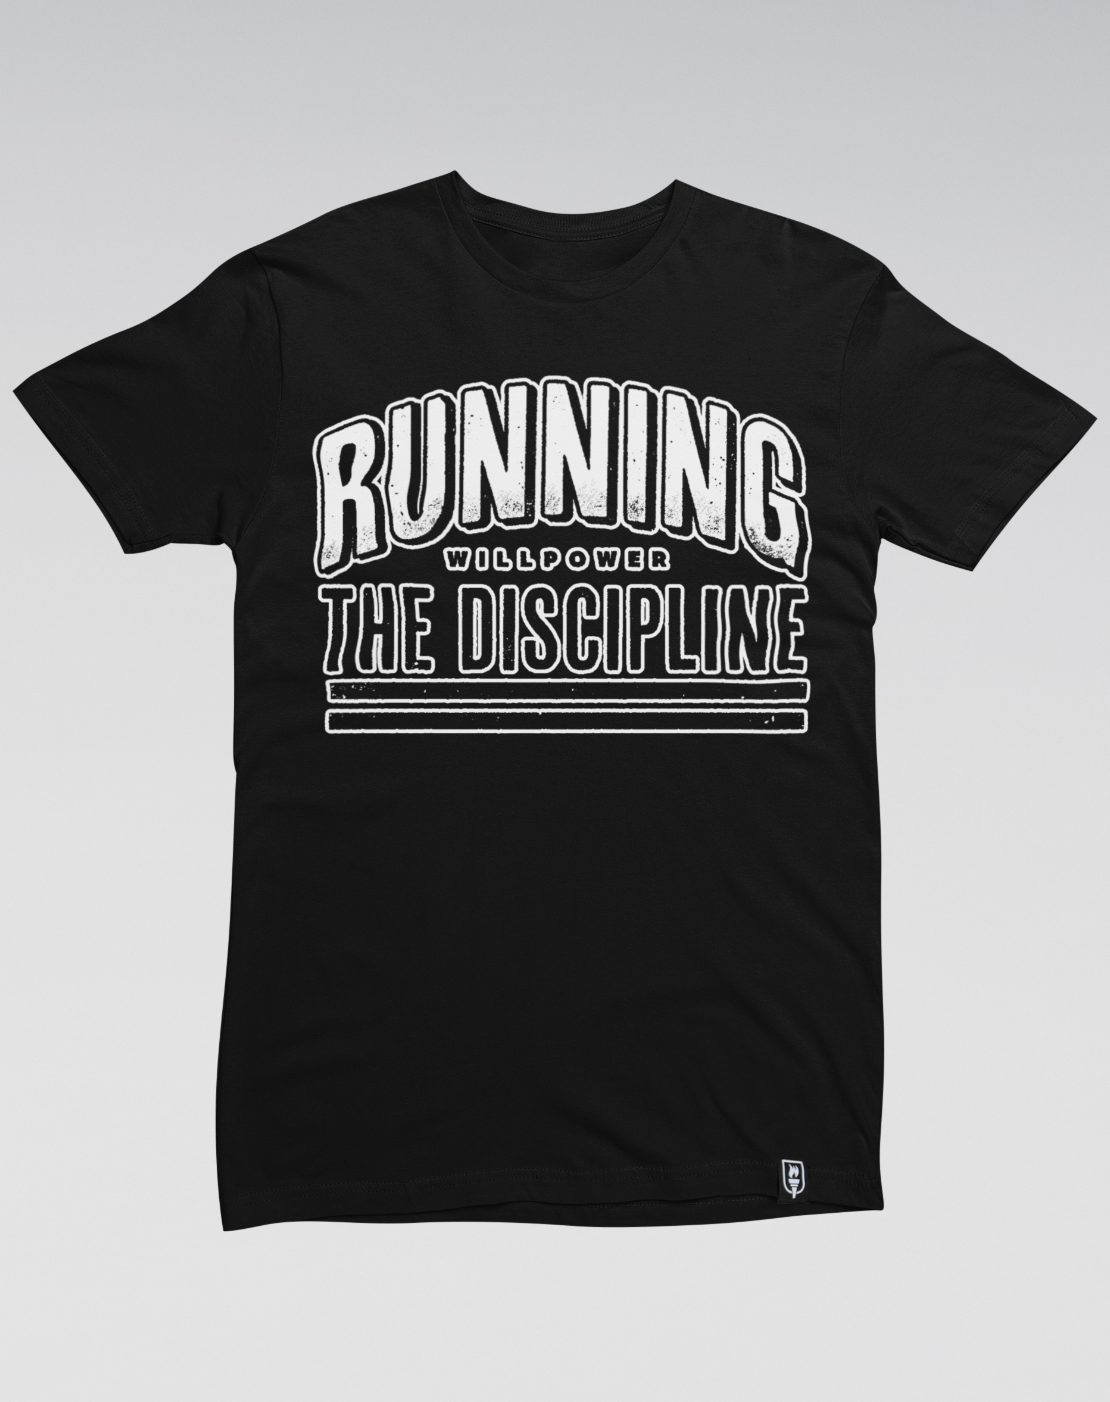 "The Discipline" Cotton T-Shirt (Black)